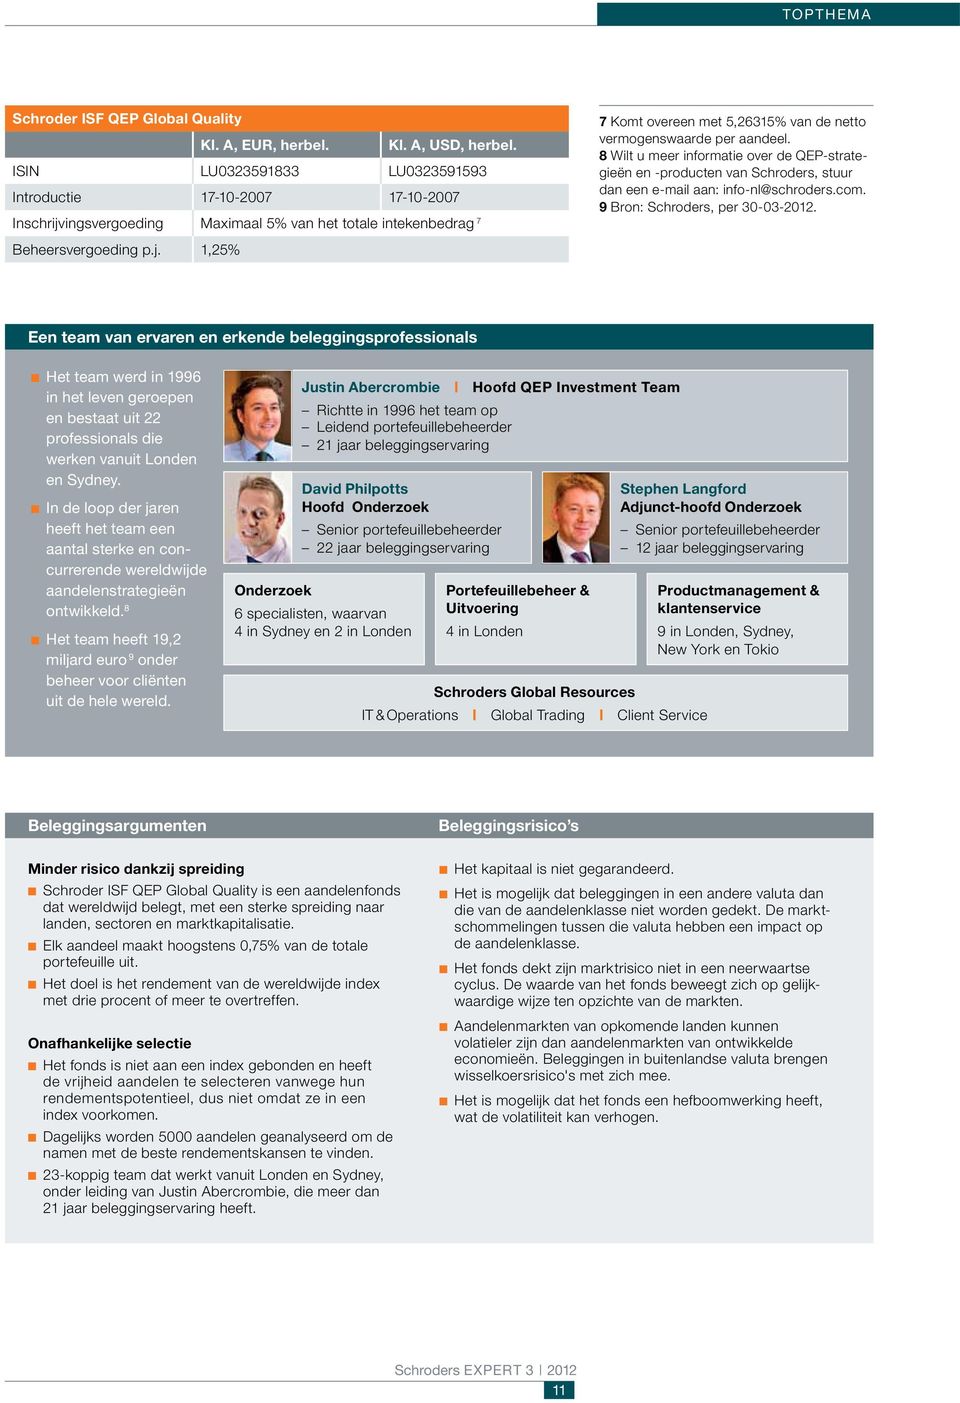 8 Wilt u meer informatie over de QEP-strategieën en -producten van Schroders, stuur dan een e-mail aan: info-nl@schroders.com. 9 Bron: Schroders, per 30-03-2012.